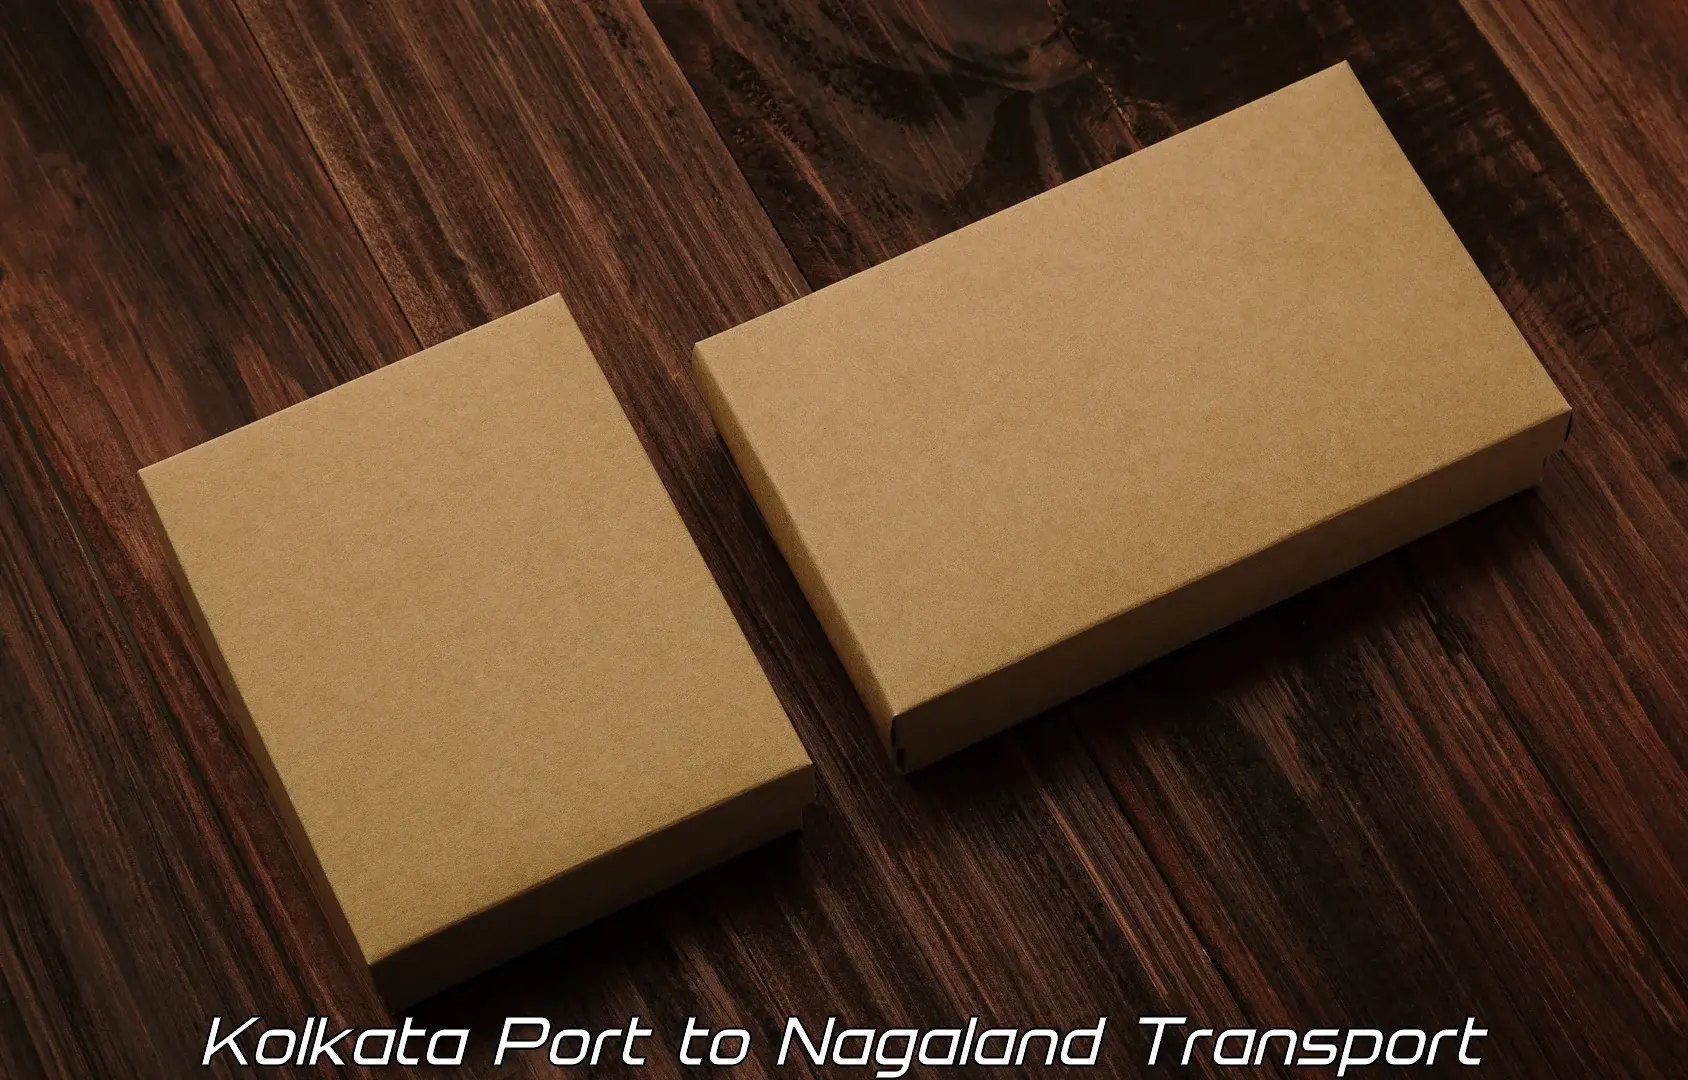 Furniture transport service Kolkata Port to Tuensang